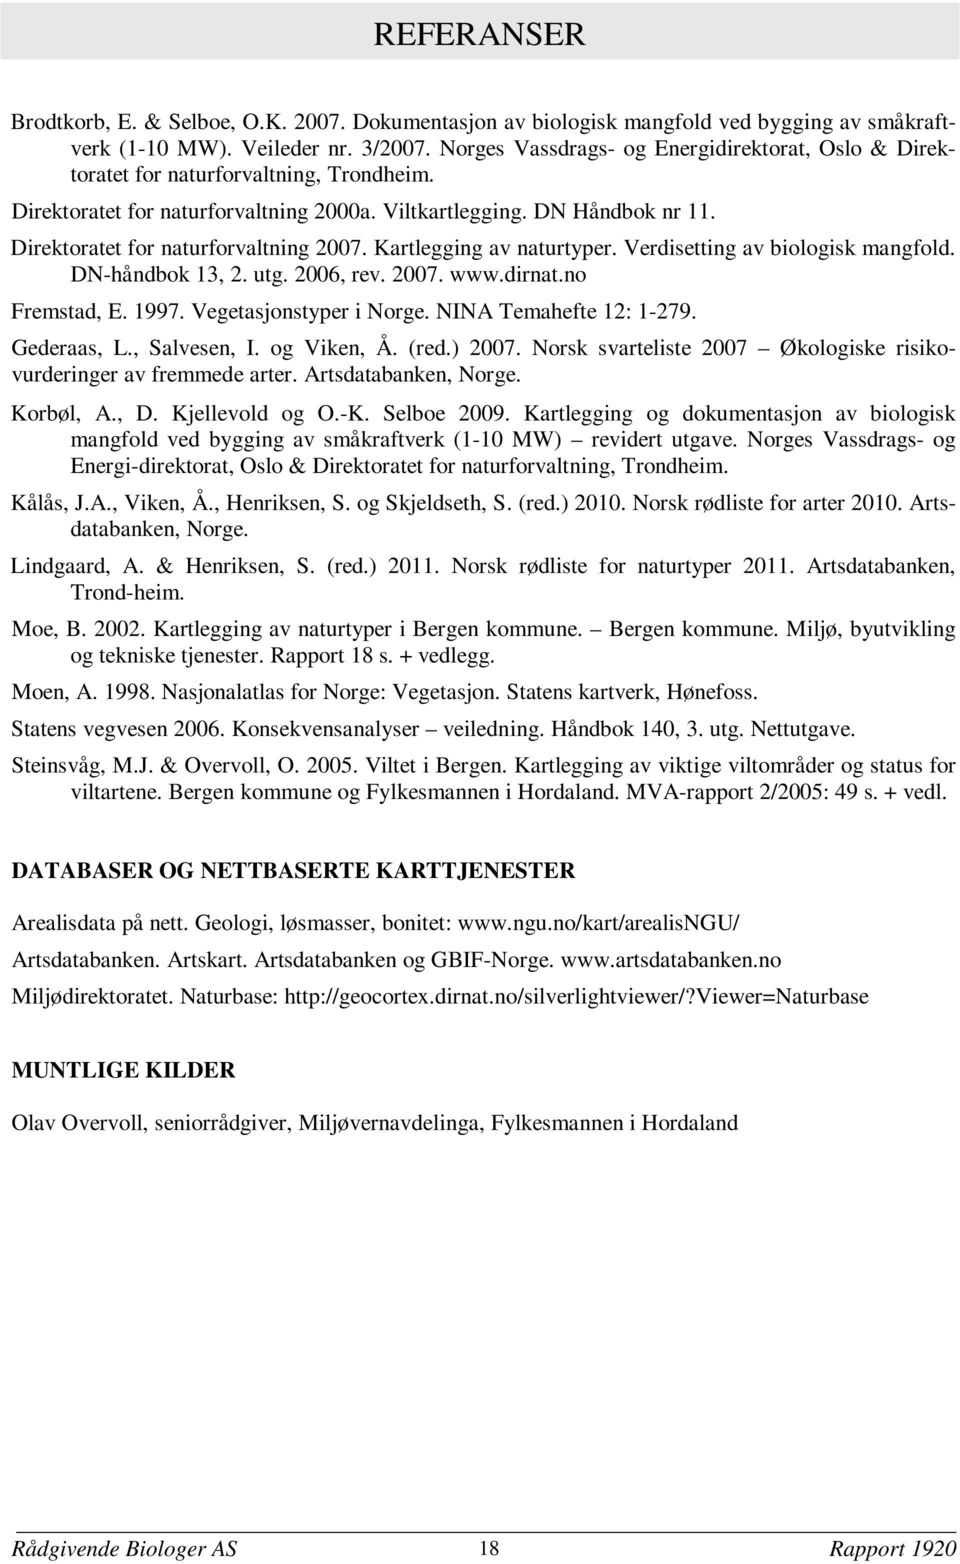 Direktoratet for naturforvaltning 2007. Kartlegging av naturtyper. Verdisetting av biologisk mangfold. DN-håndbok 13, 2. utg. 2006, rev. 2007. www.dirnat.no Fremstad, E. 1997.